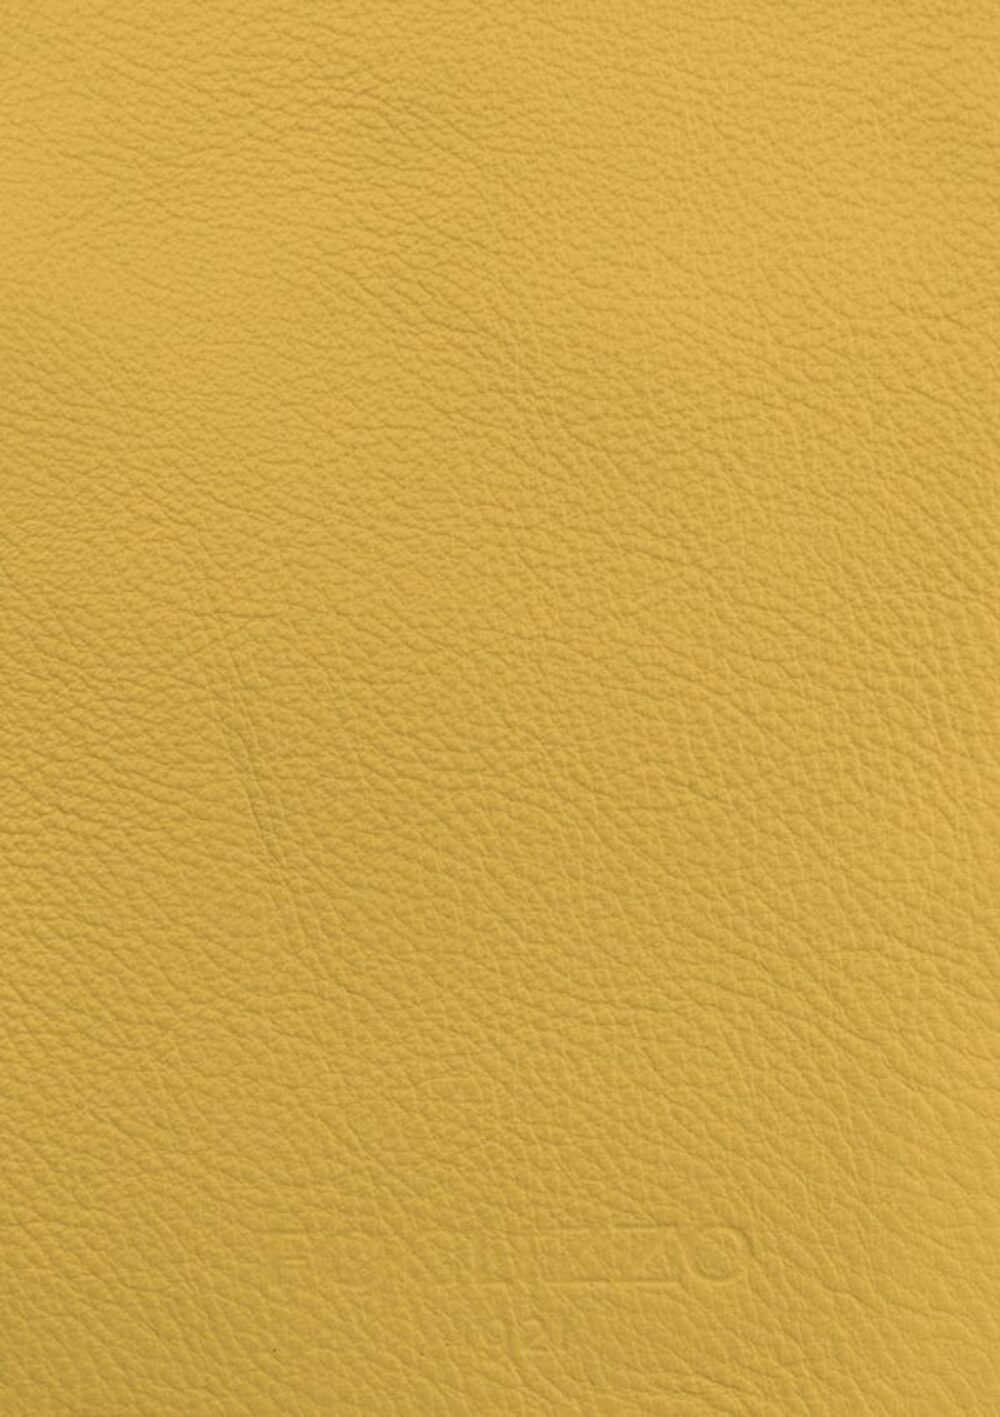 Diseño de lujo y alfombras de alta gama hechas a medida • Flax Yellow Jade